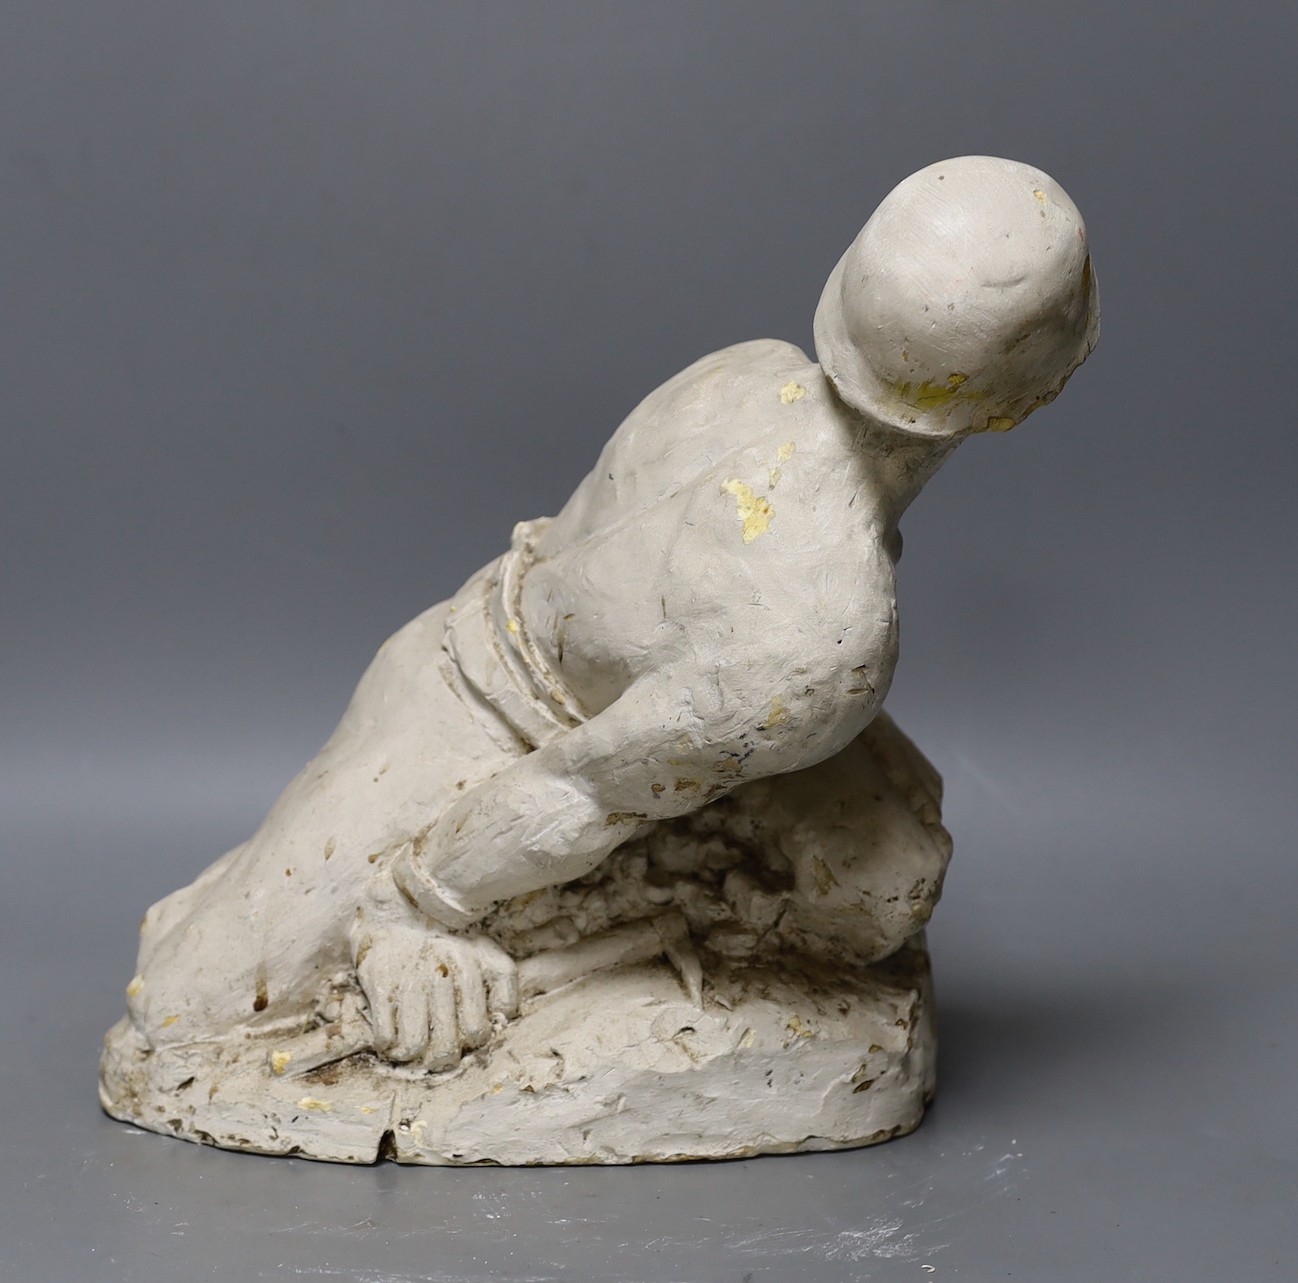 A plaster cast model of a miner, Brutaluit manner, signed L.S Odoarde? 29cm